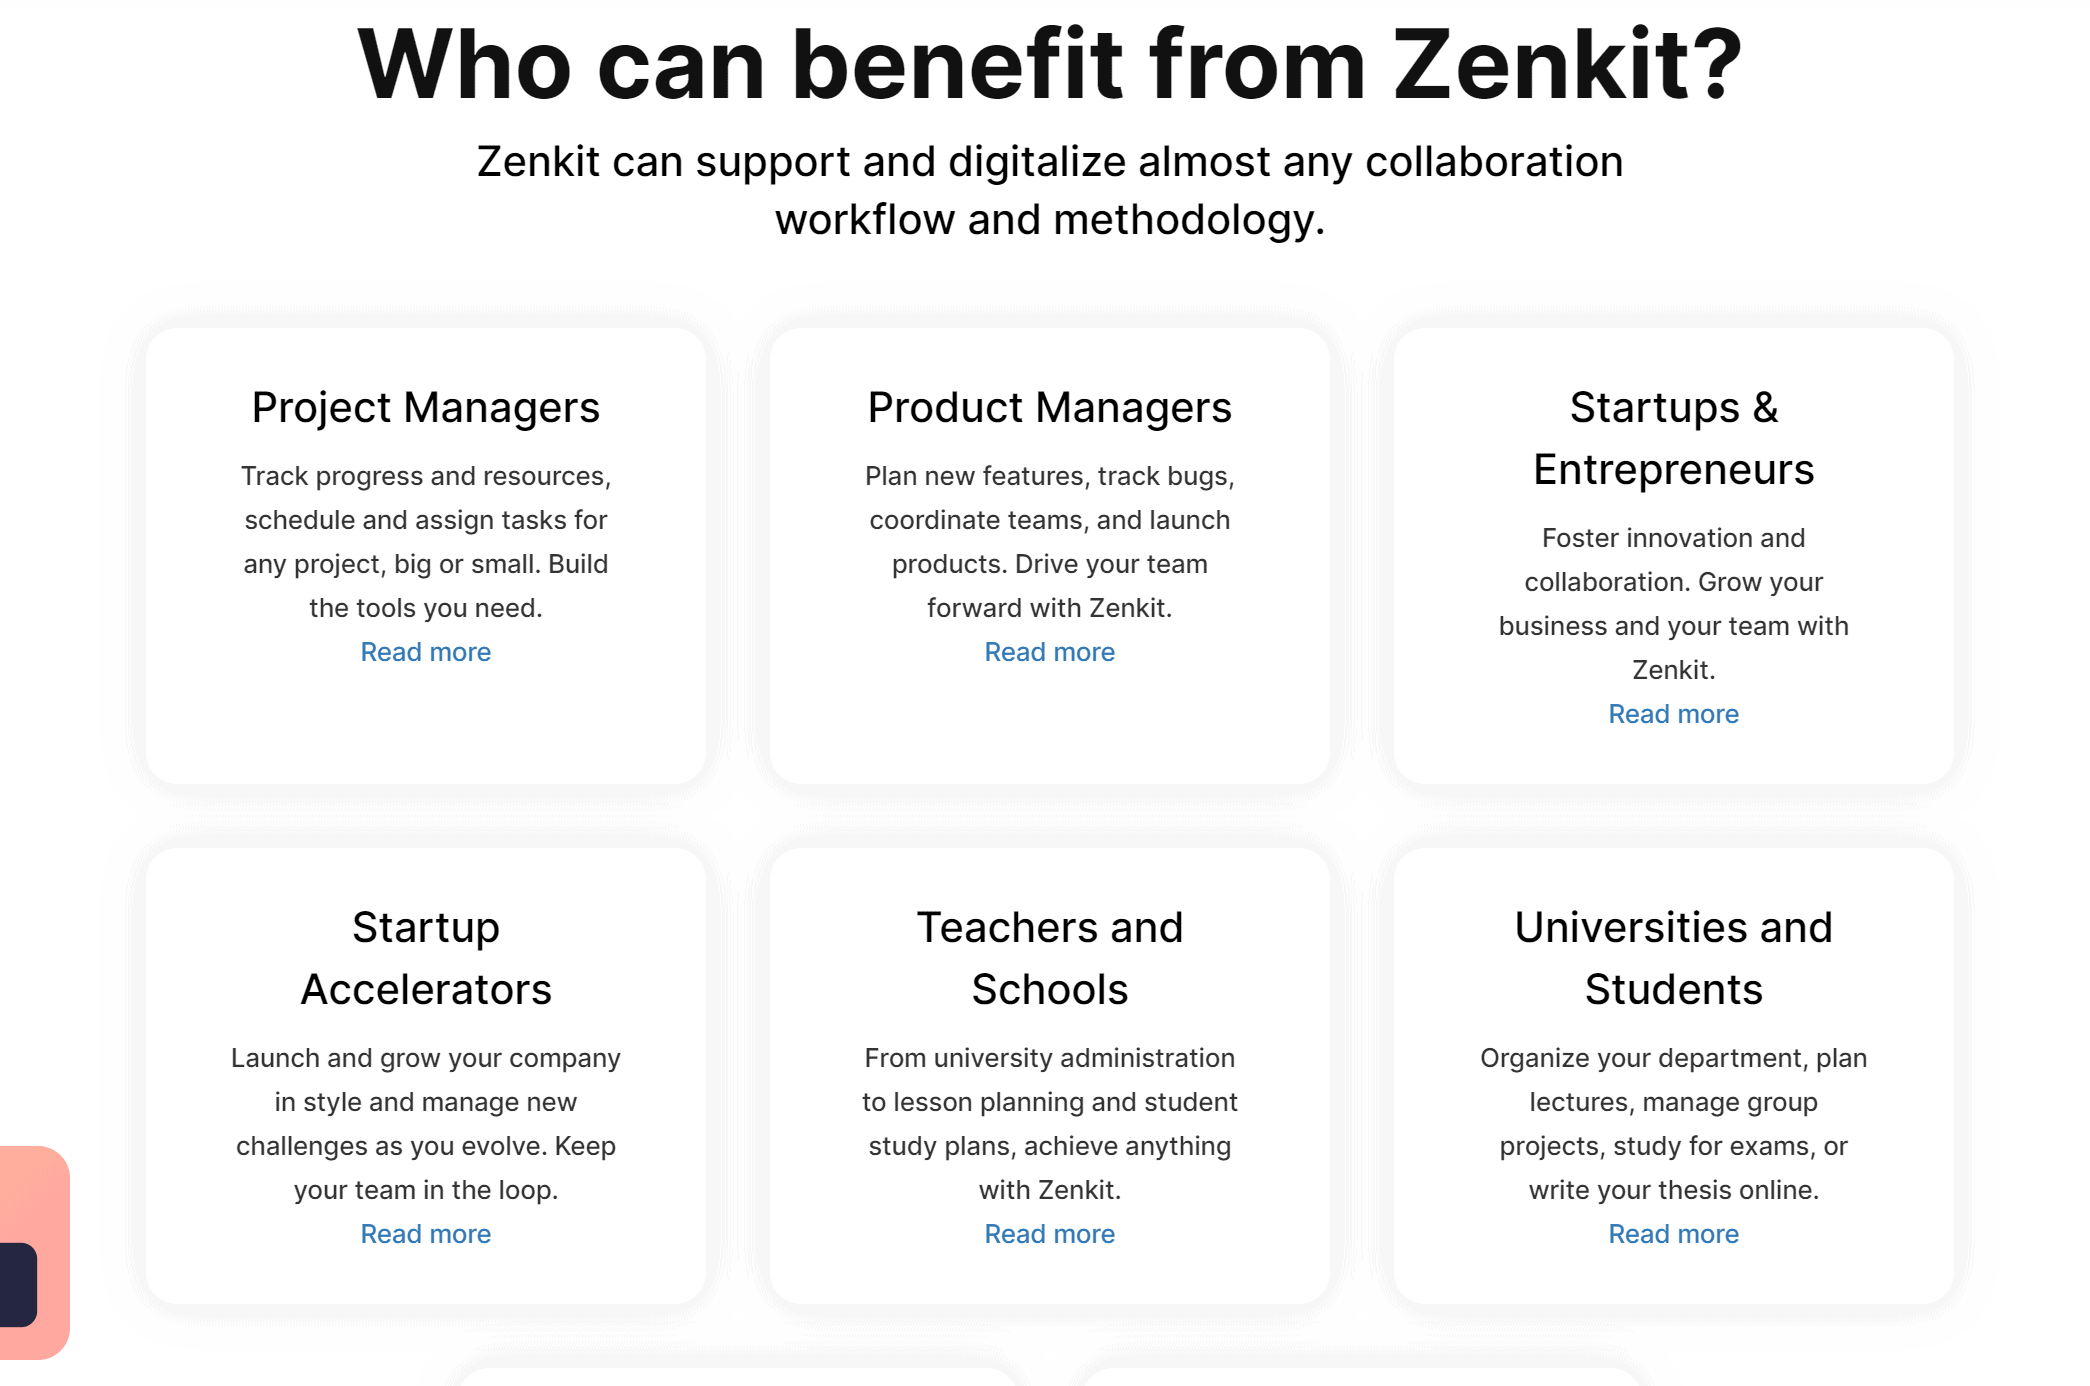 Zenkit benefits